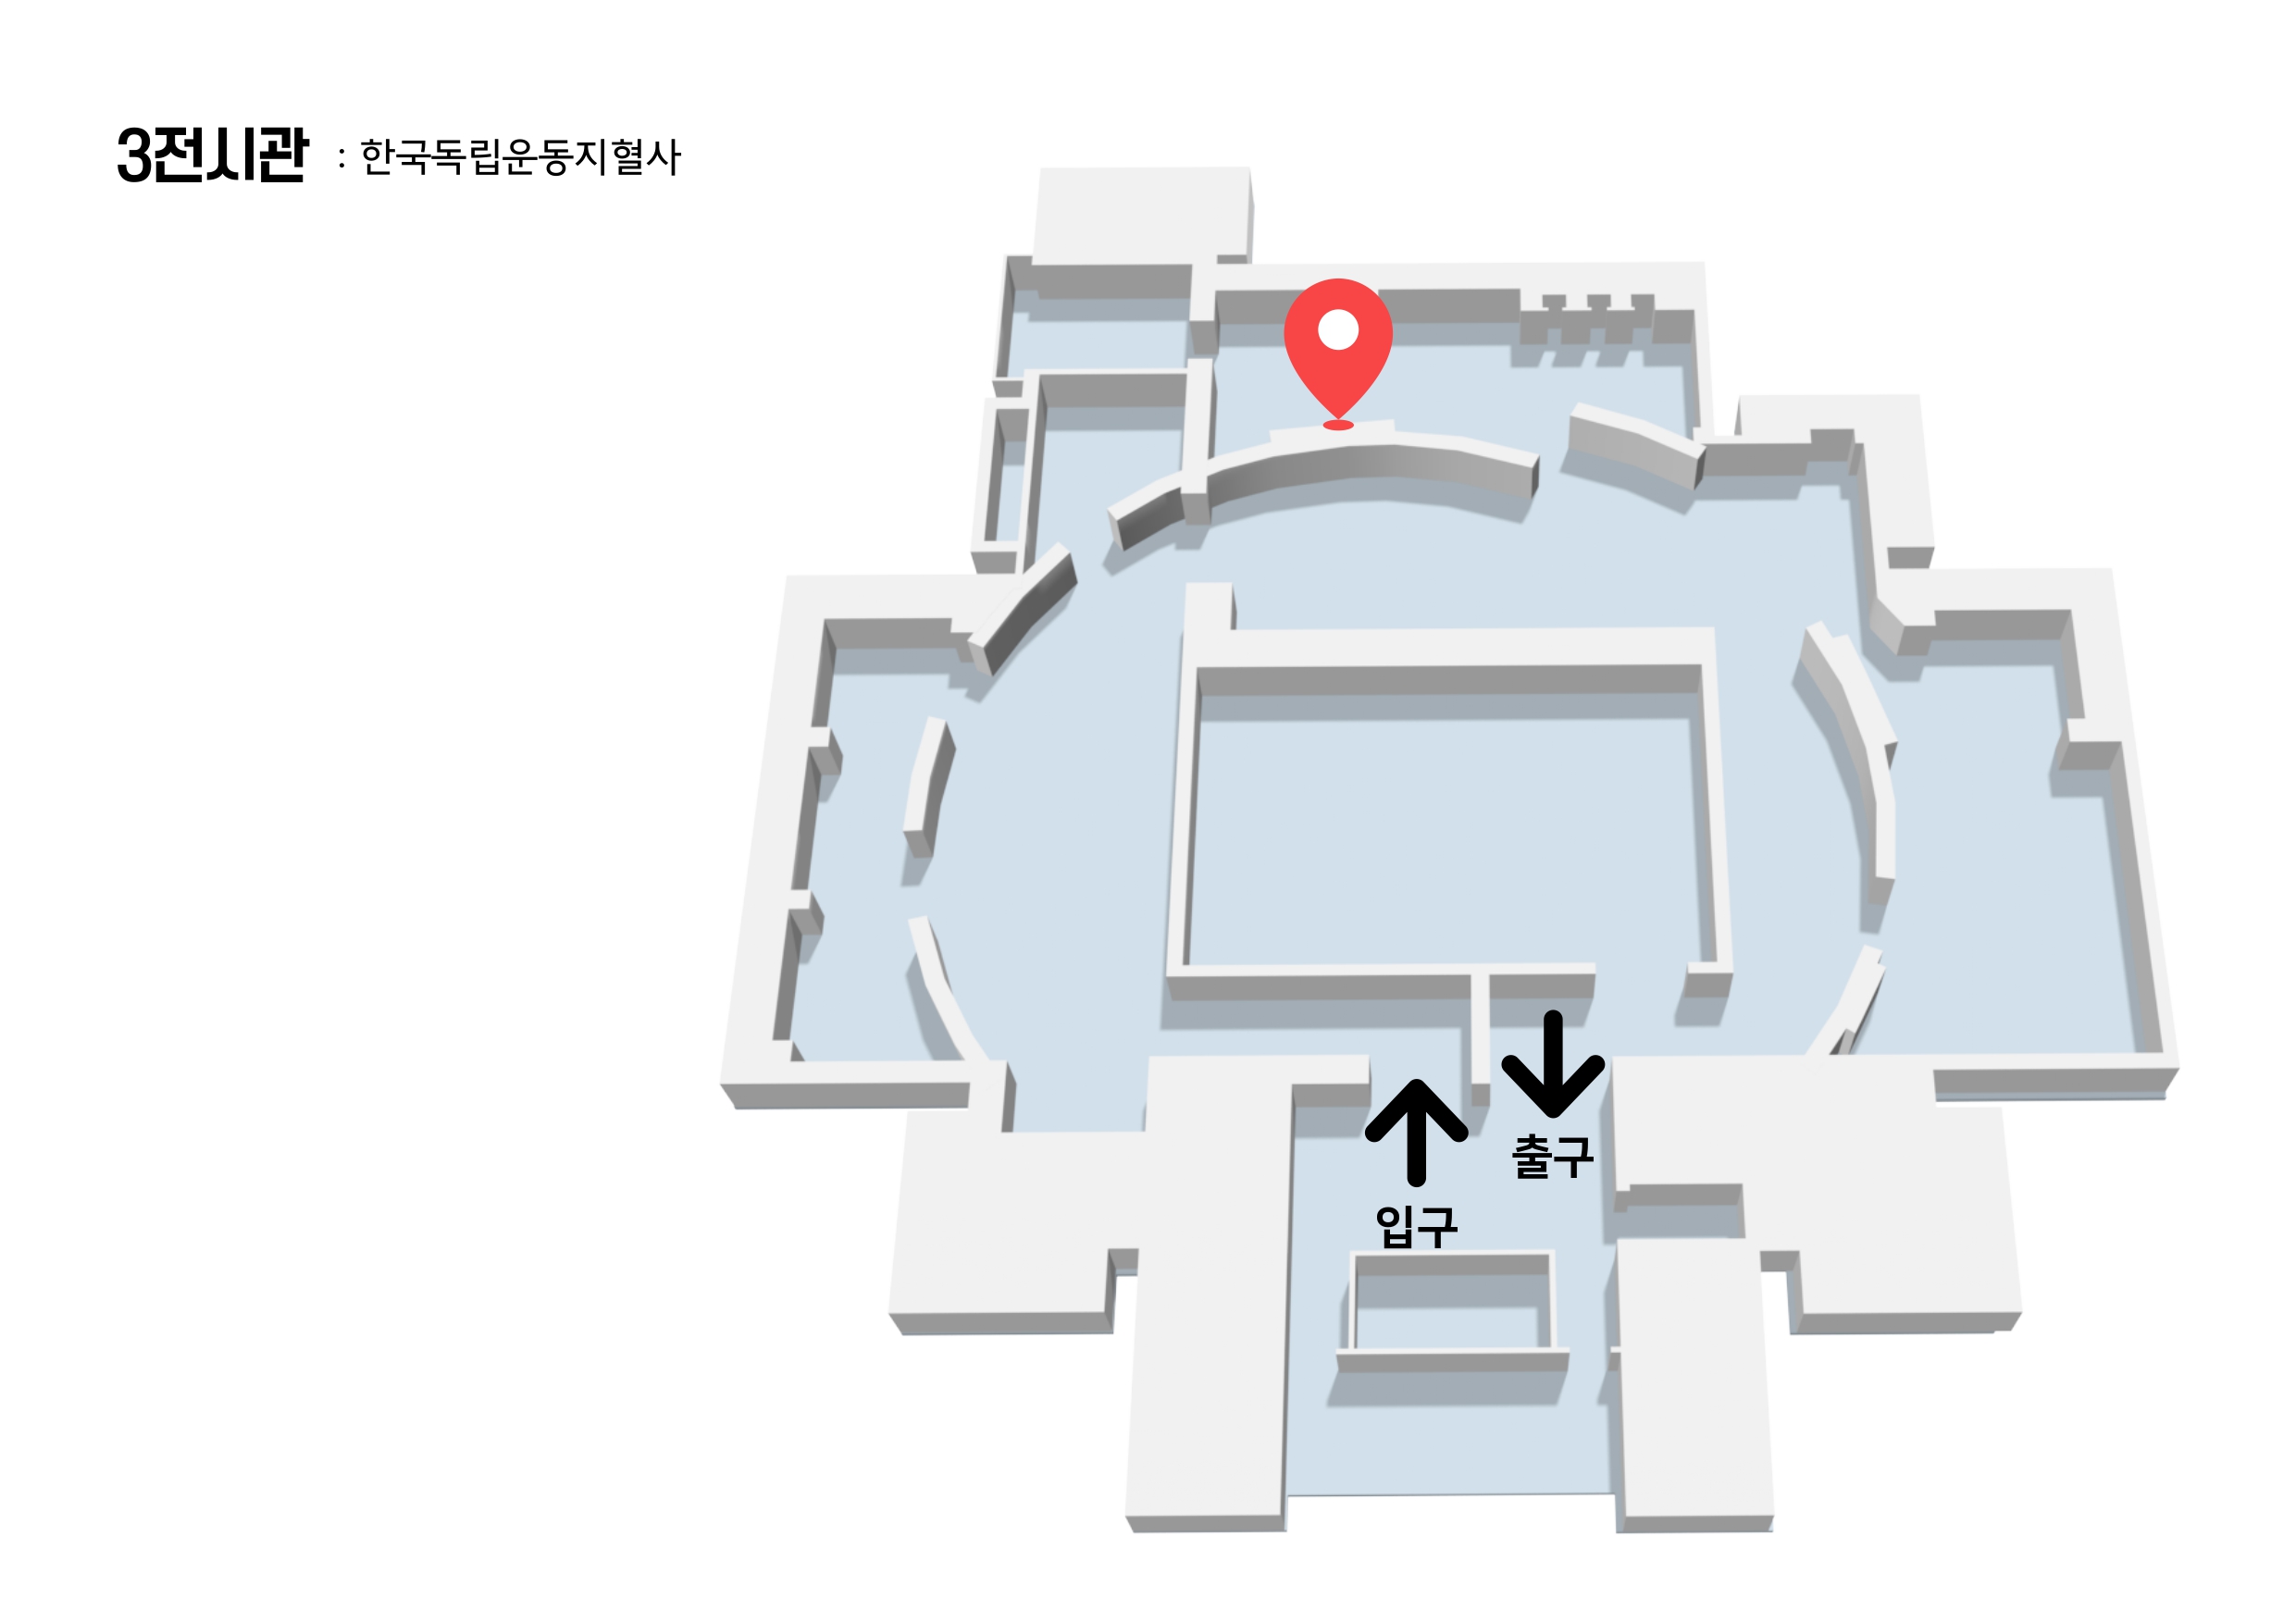 3전시관 『한국독립운동지혈사』 전시물 위치